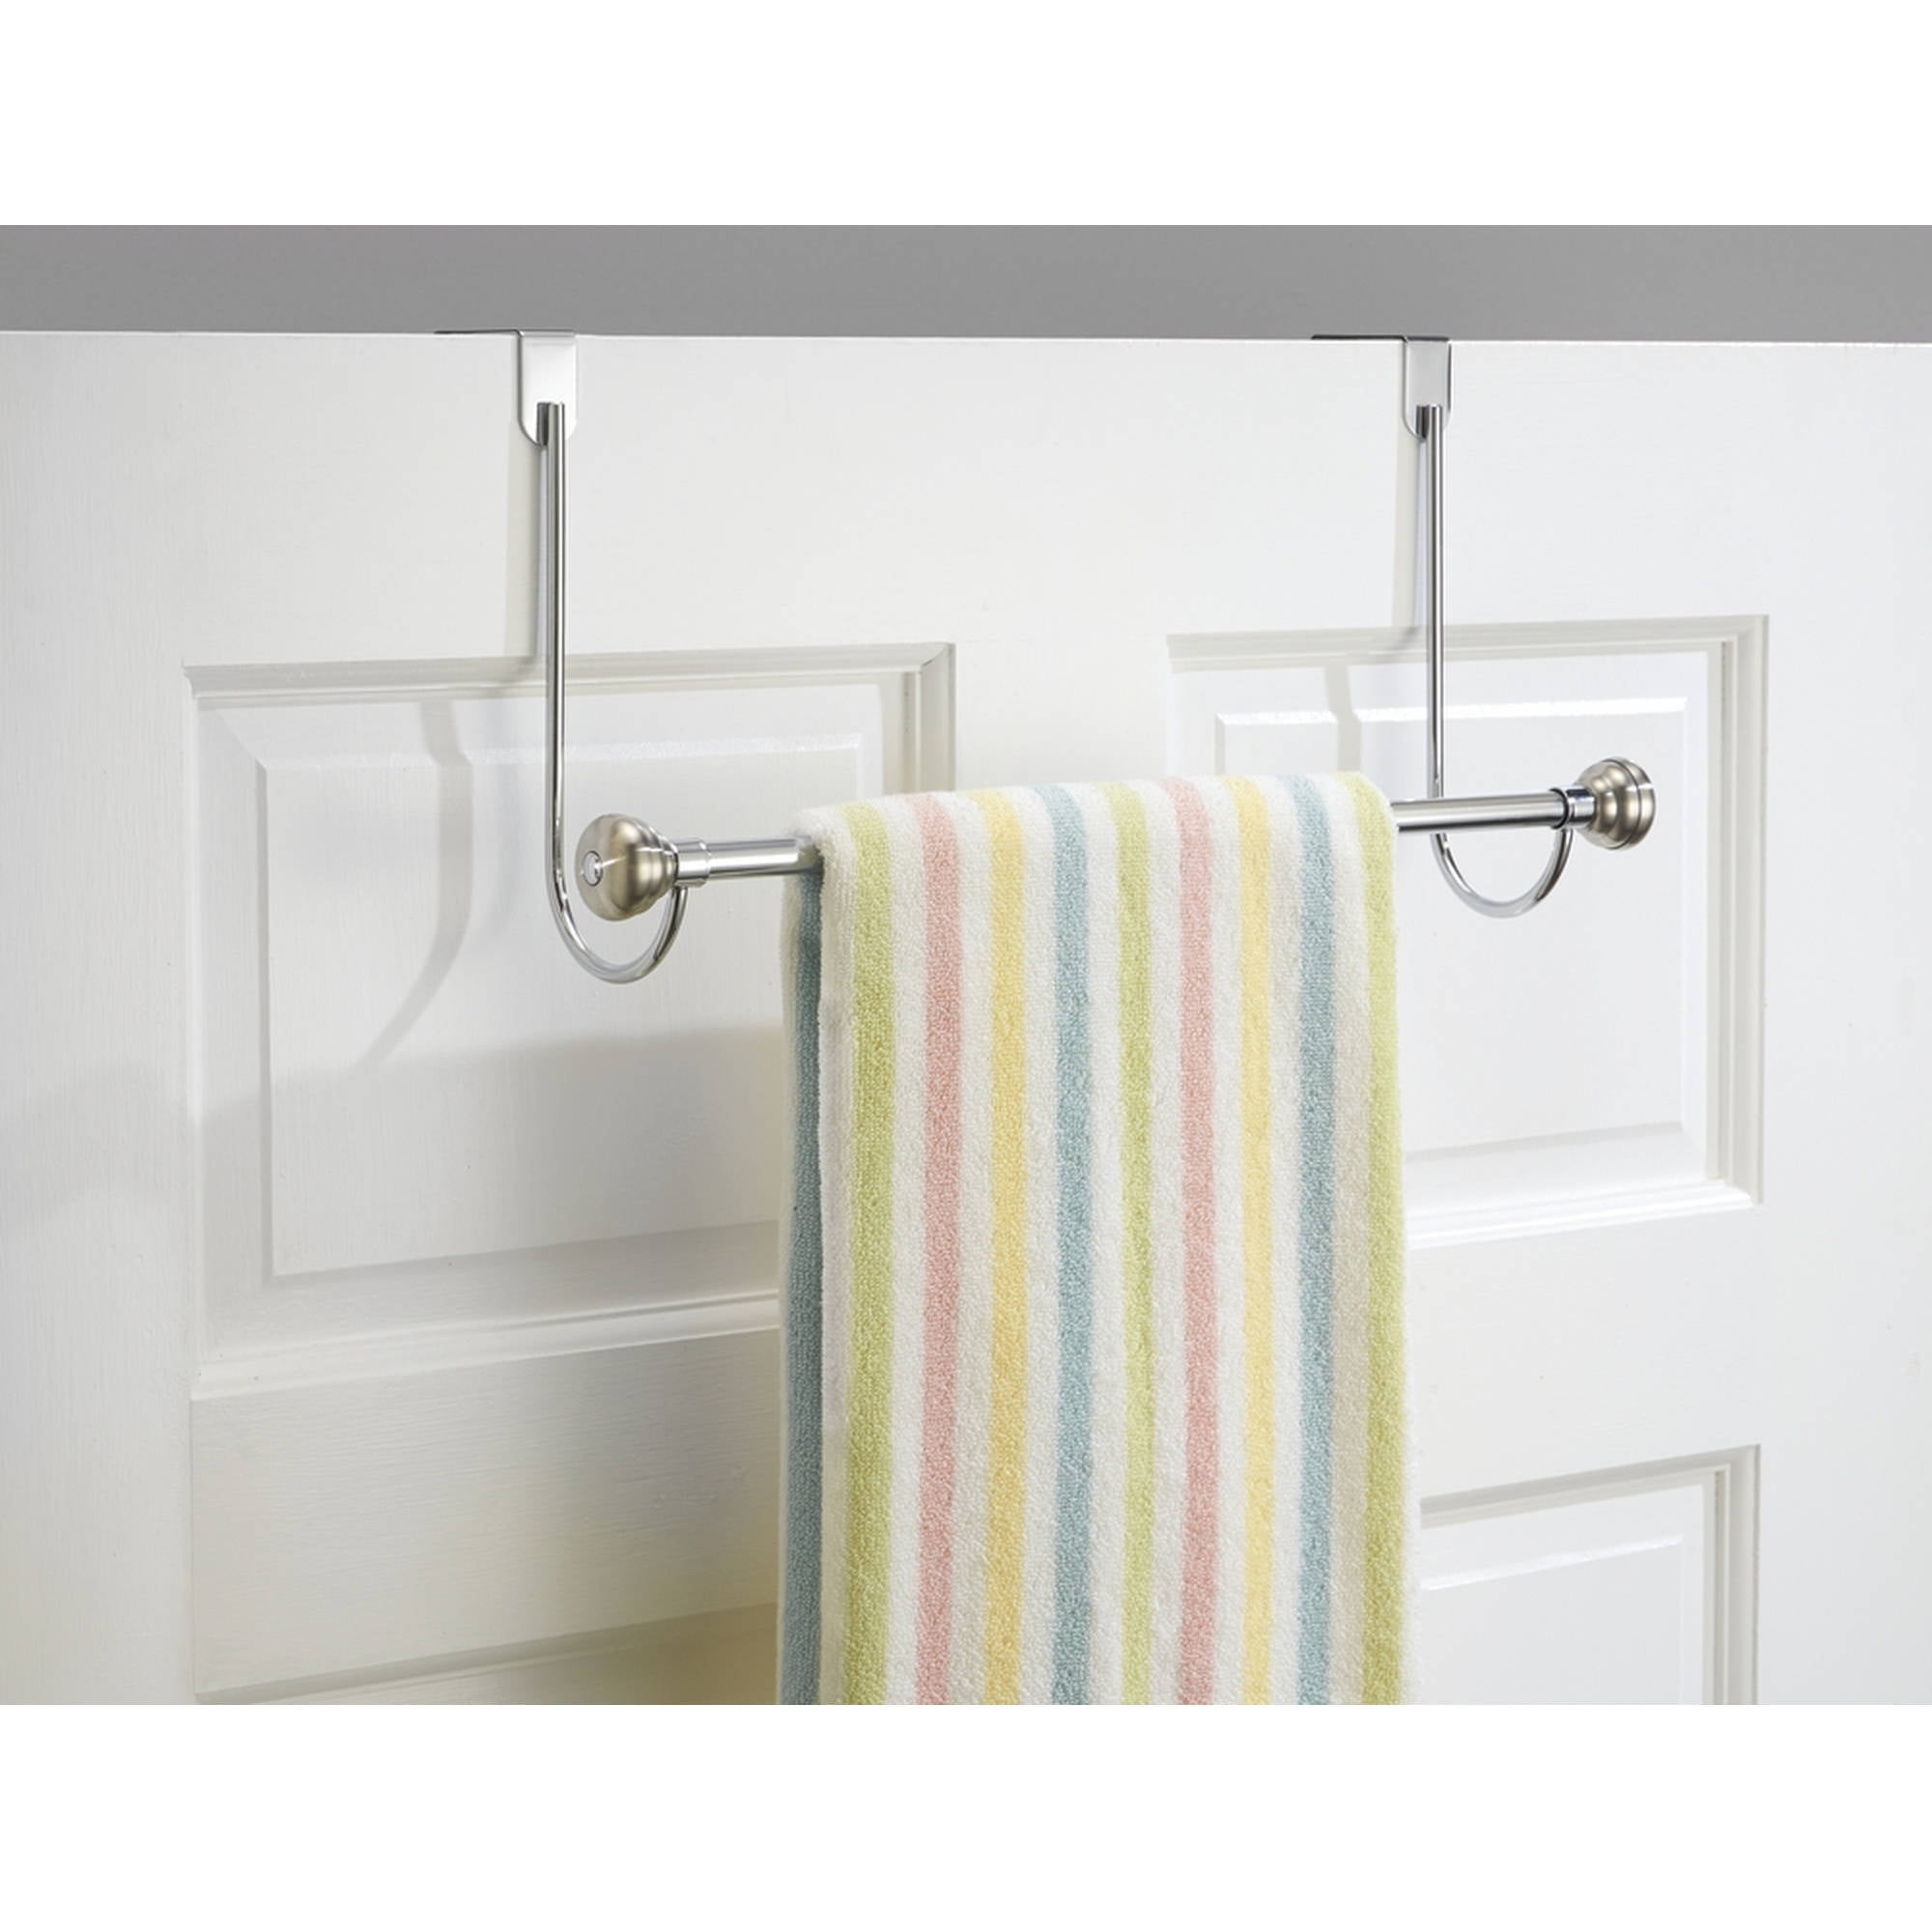 Interdesign York Over The Shower Door Towel Rack